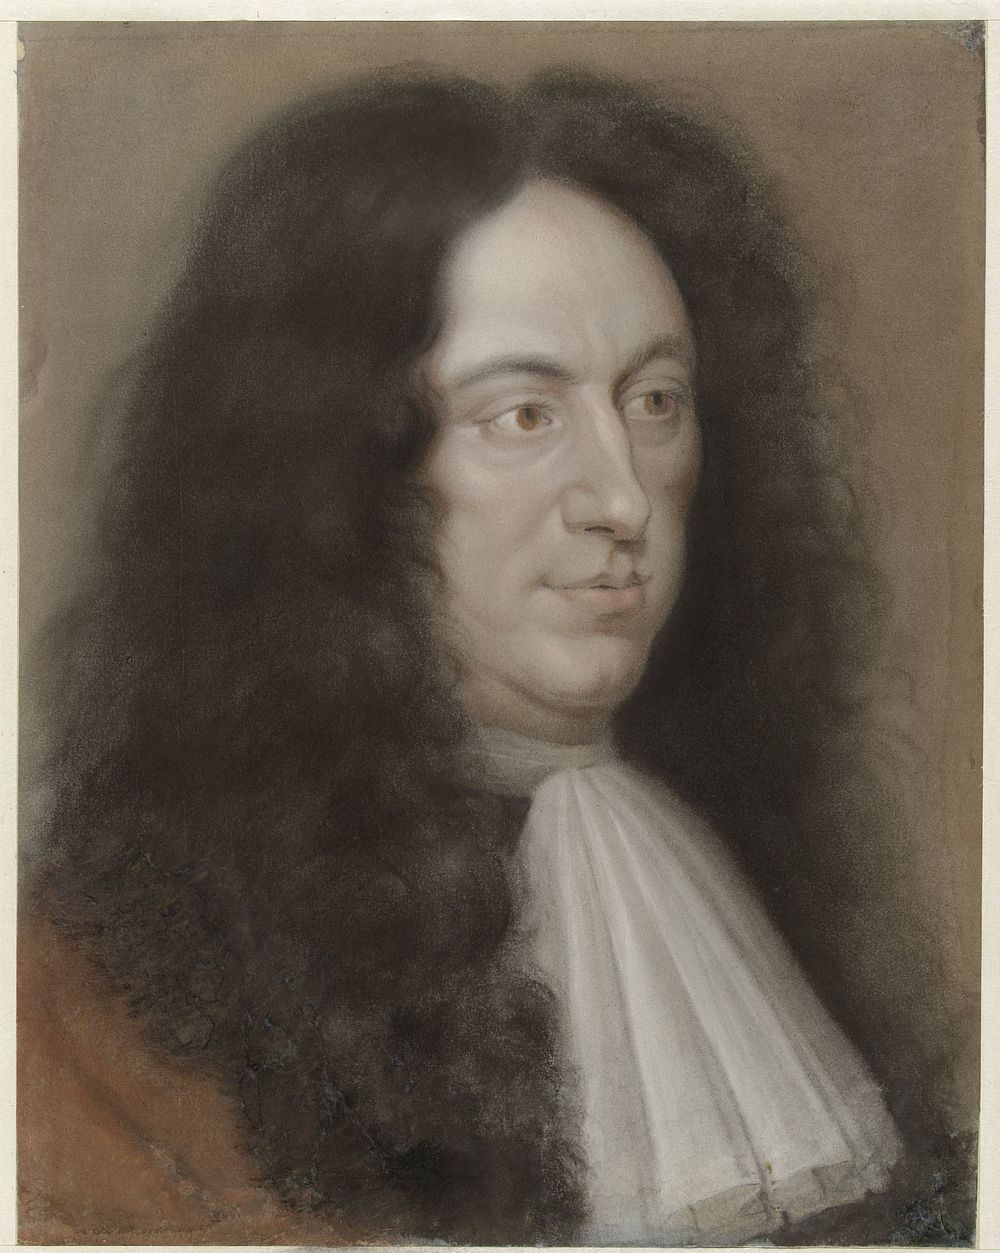 Portret van graaf Karl von Biorn Bonde (1633 - 1698) by Bernard Vaillant and Wallerant Vaillant